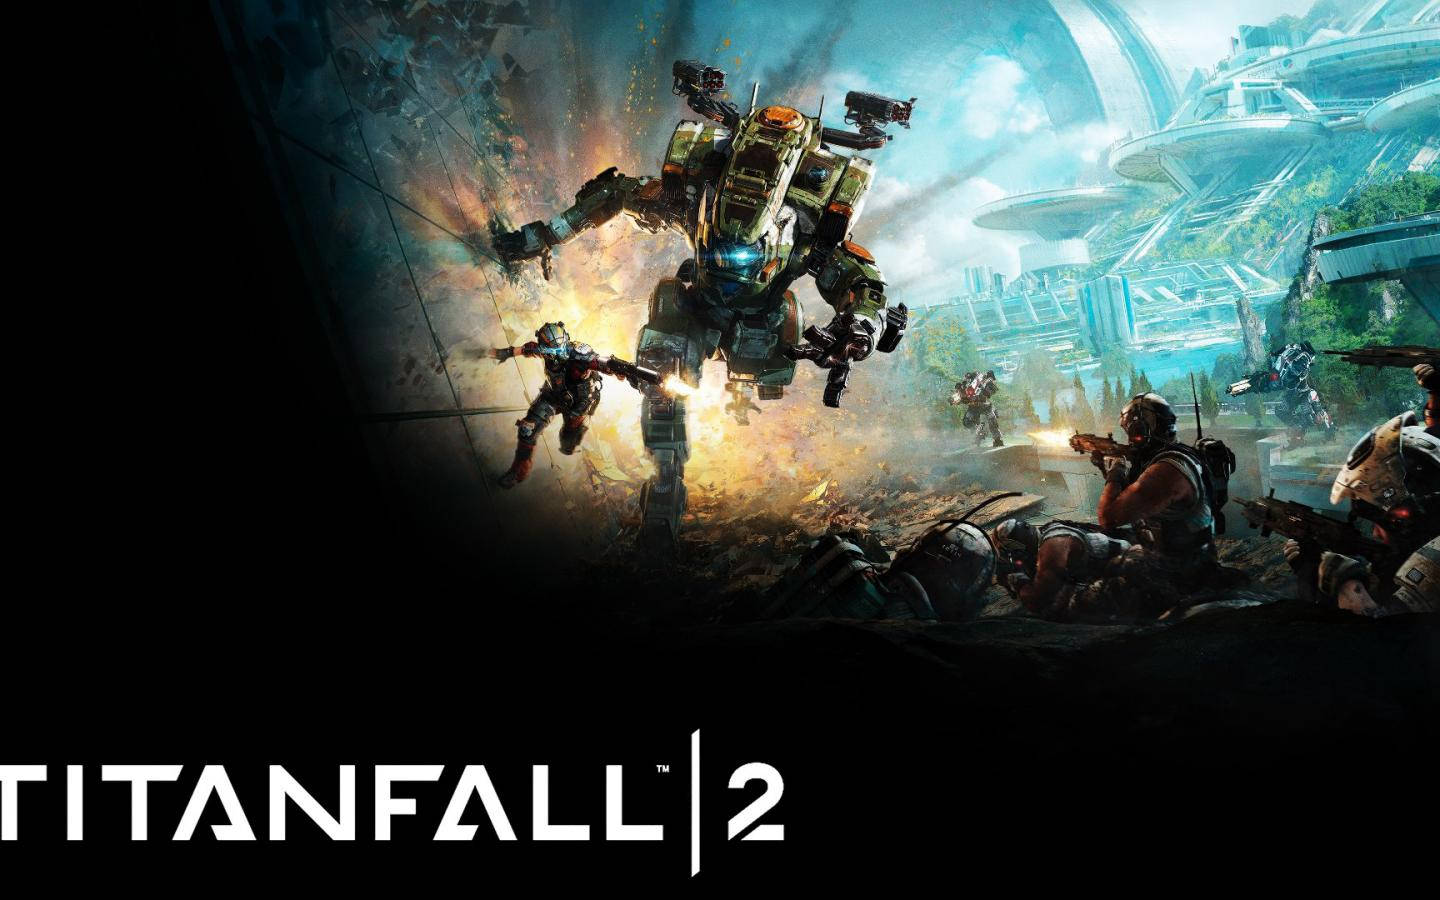 Titanfall 2 Digital Game Cover Wallpaper